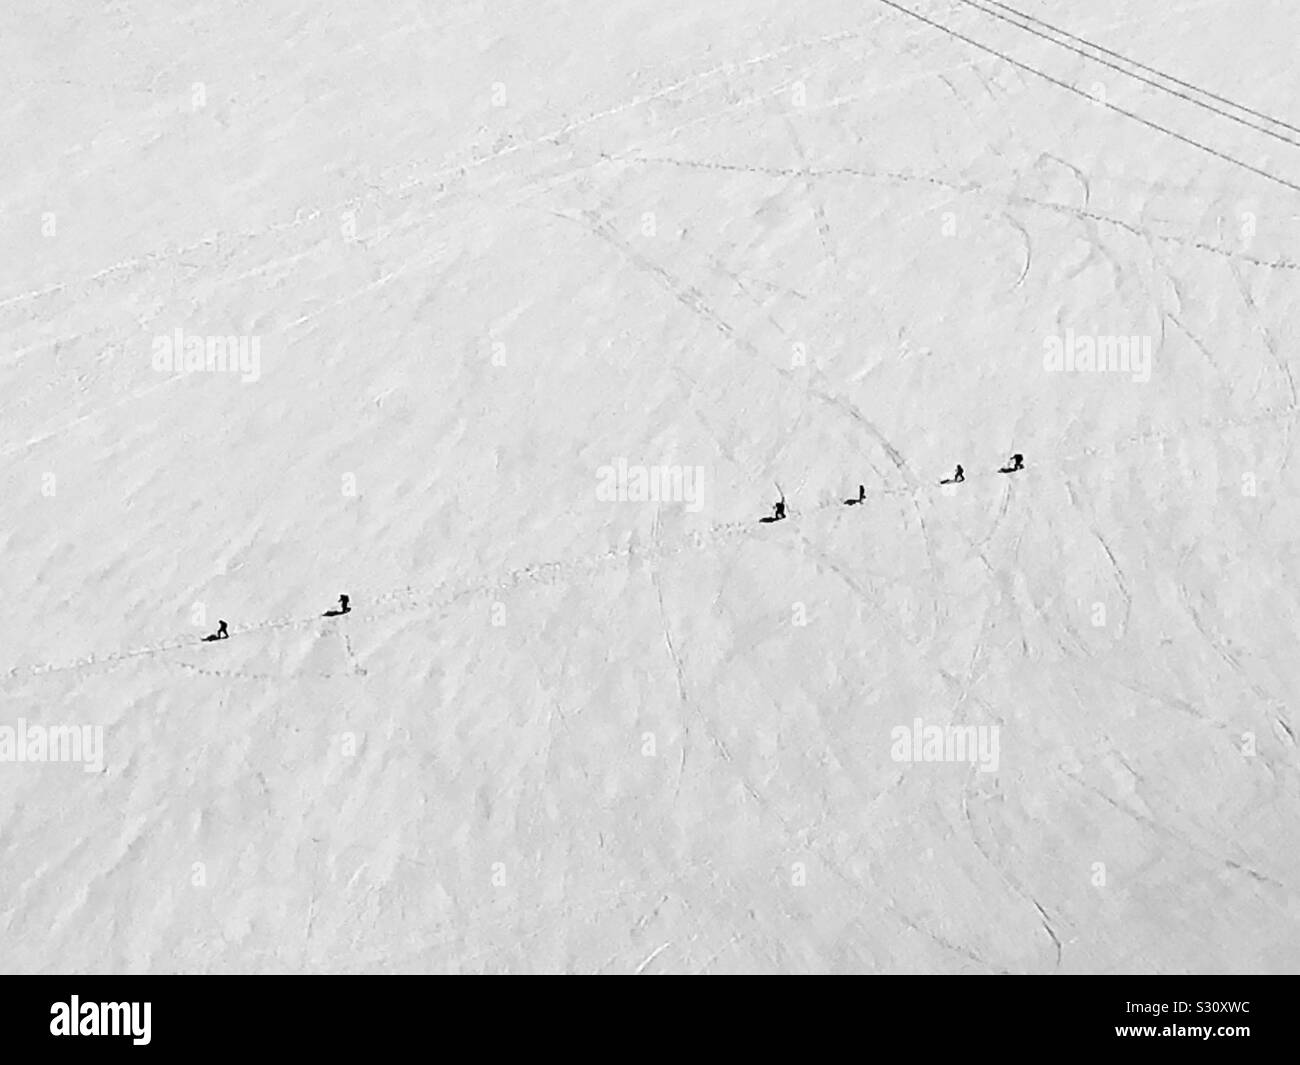 Menschen auf einer Skitour in Chamonix, Frankreich. Stockfoto